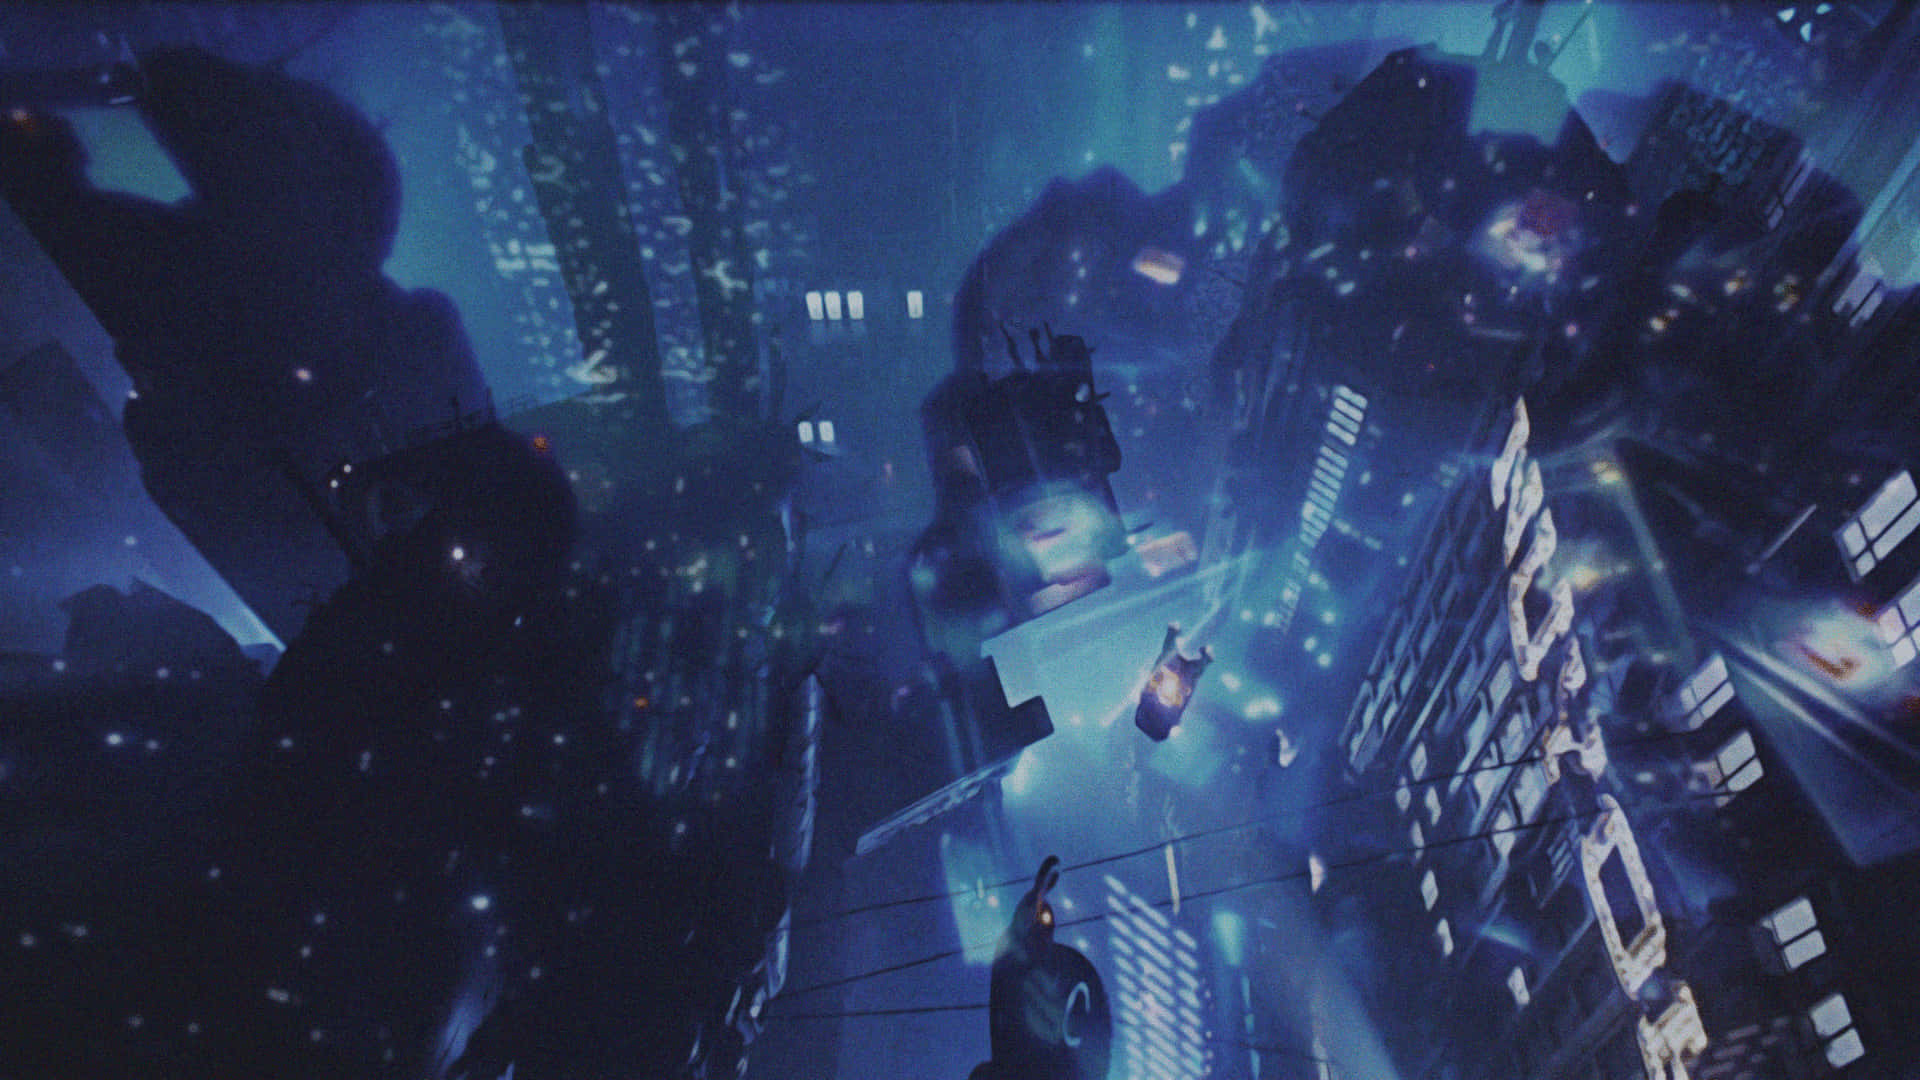 Einscience-fiction-abenteuer Erwartet Dich In Der Neongeprägten Welt Von Blade Runner.